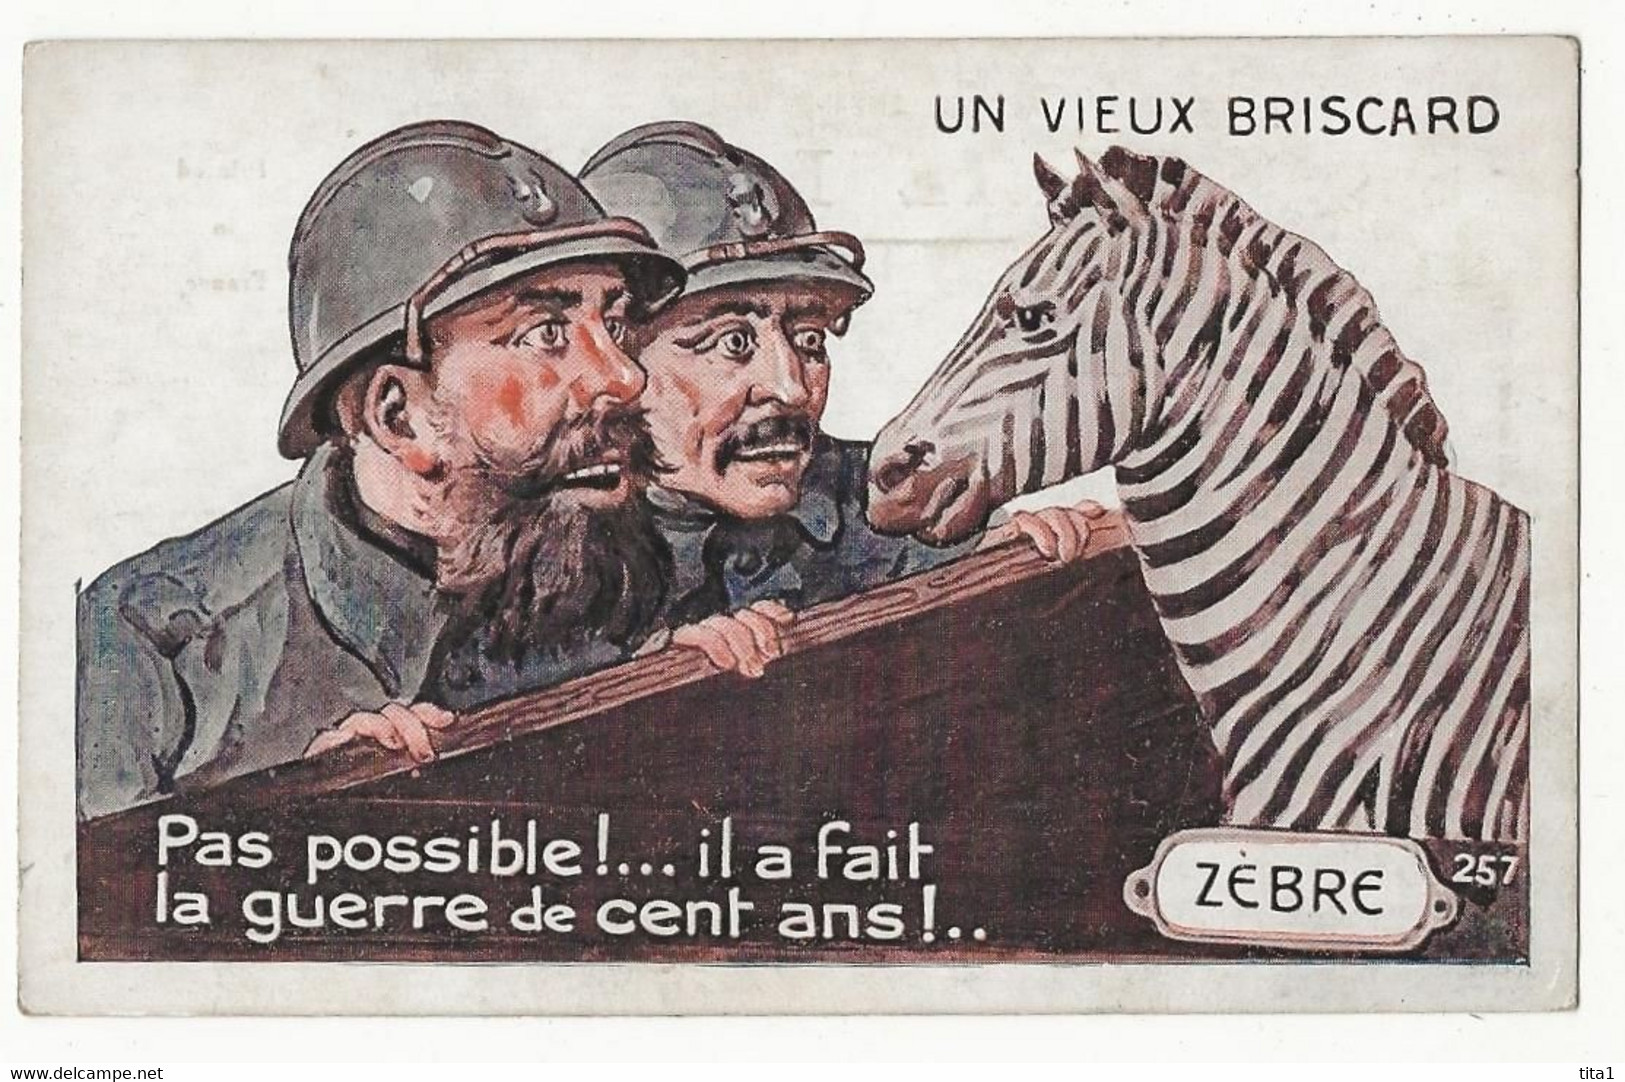 116 - Un Vieux Briscard - Zebras